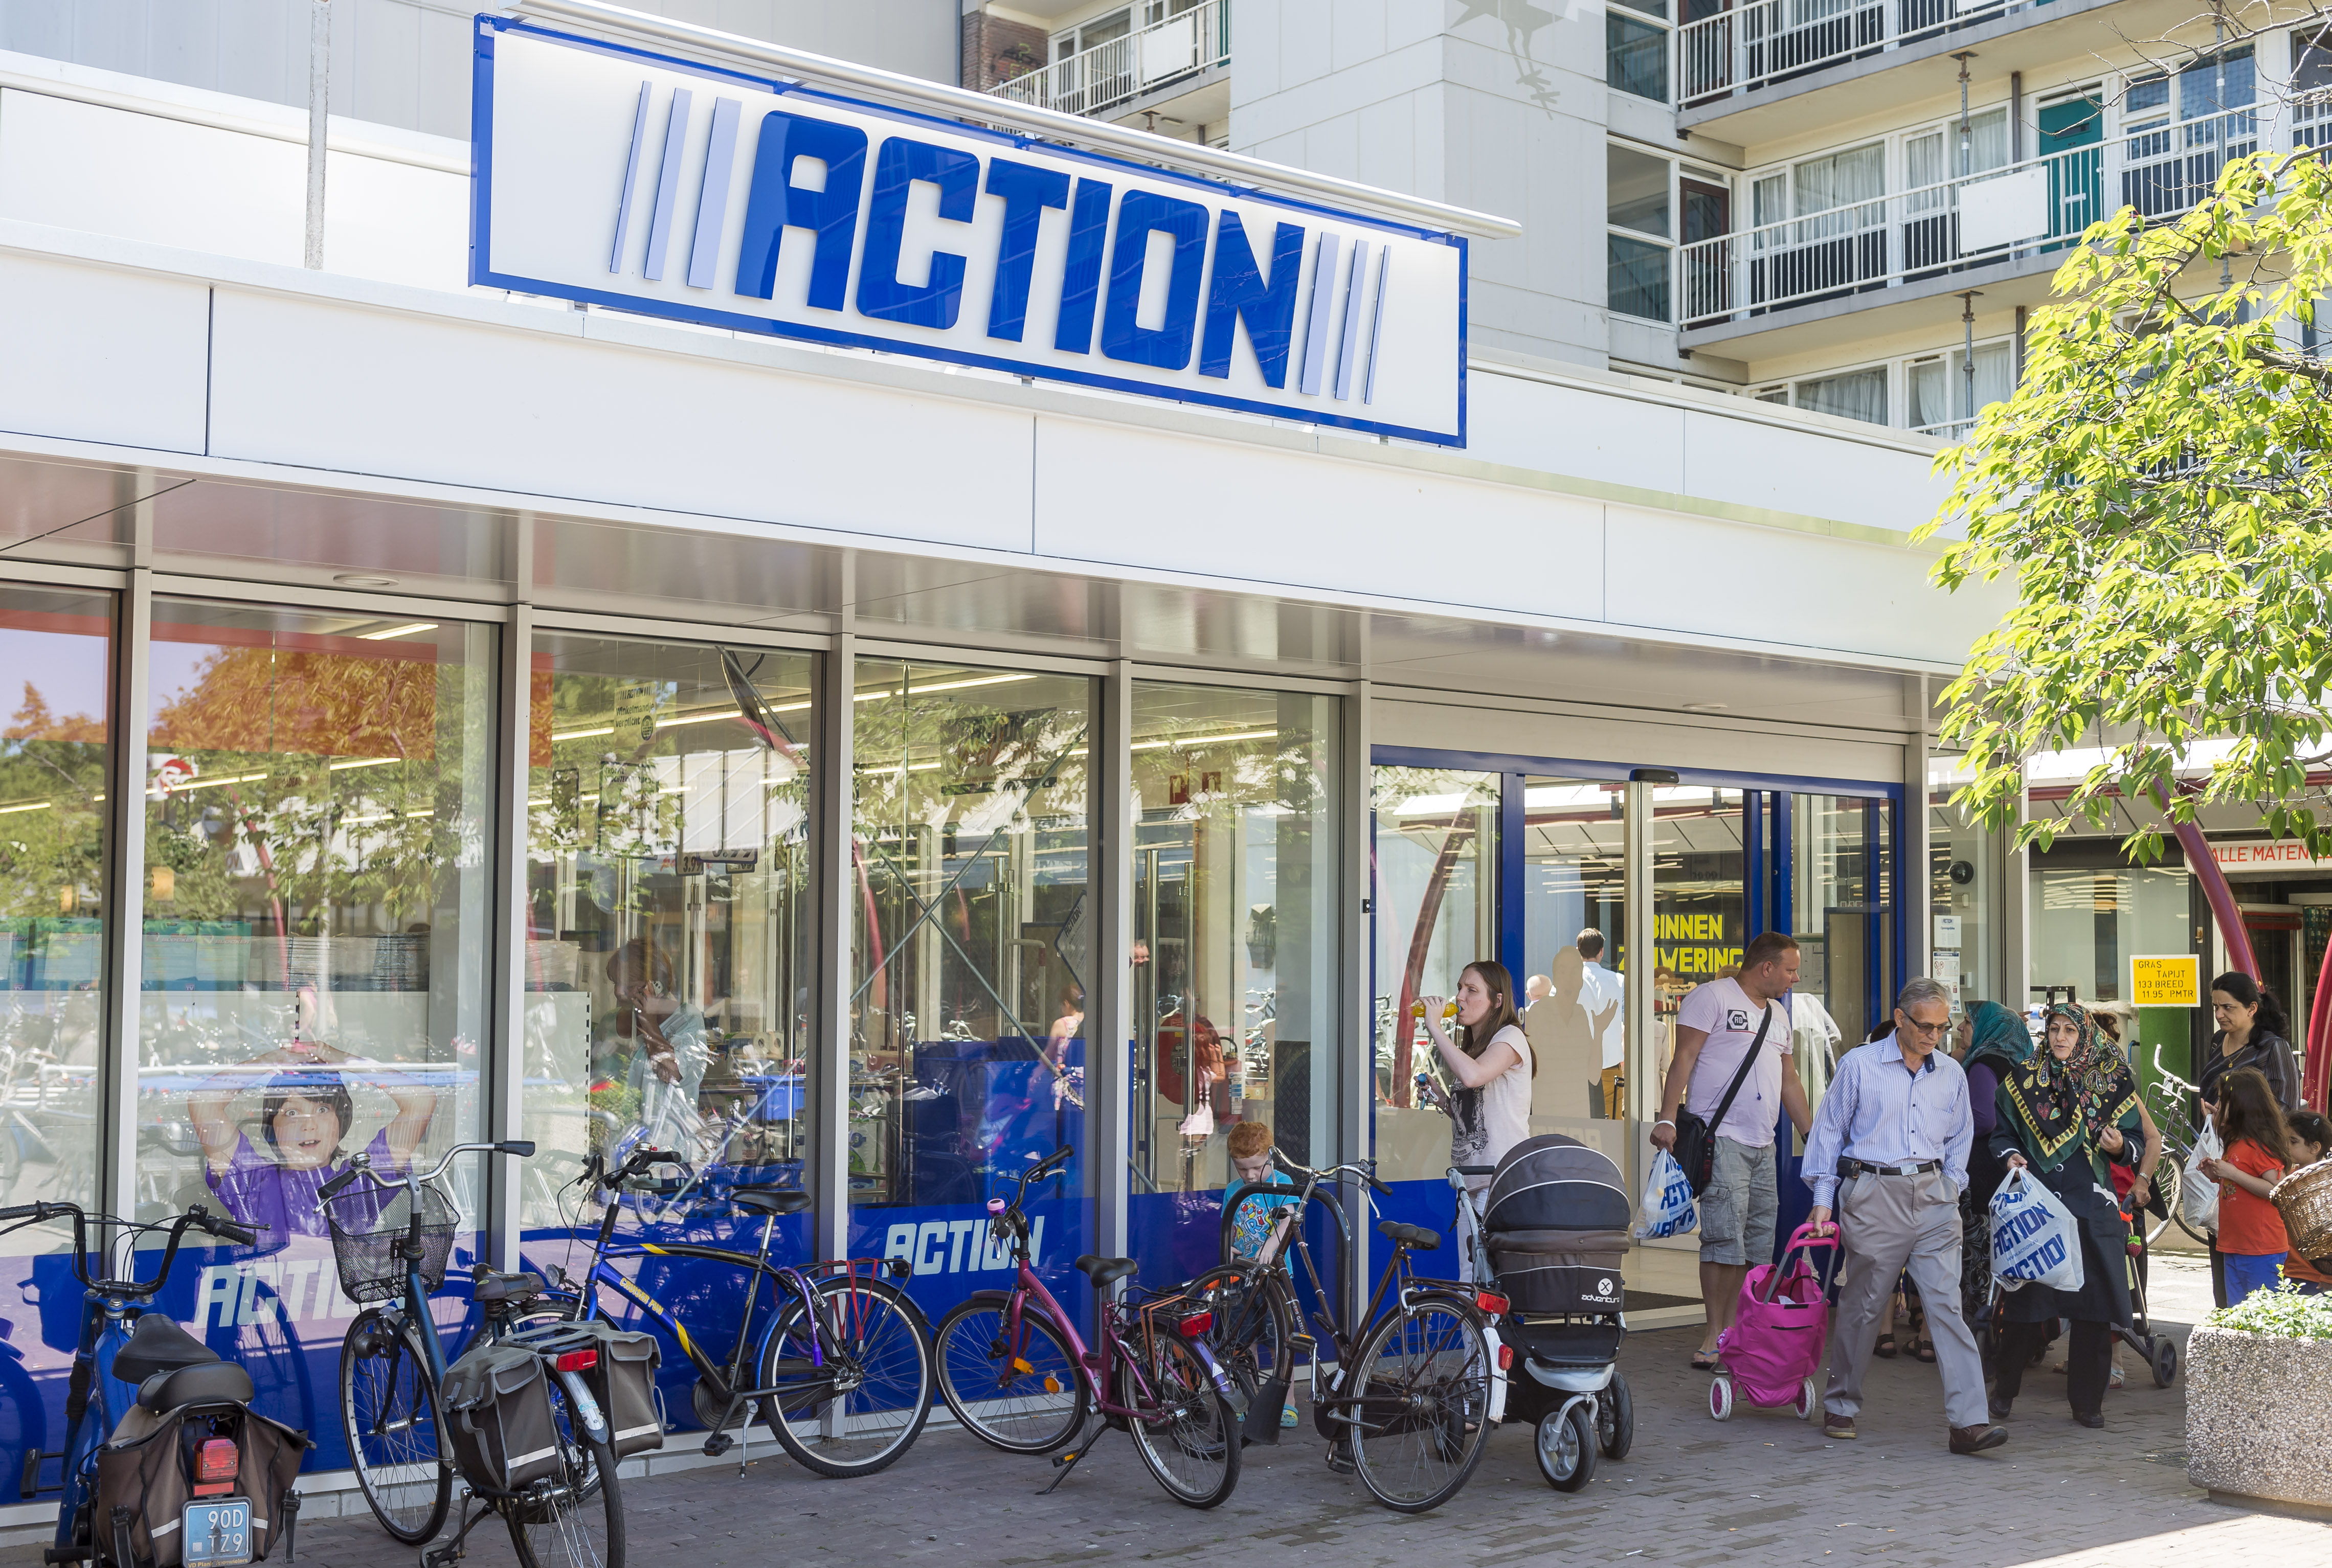 2014-06-11 14:09:03 DELFT - Exterieur van winkelketen Action in winkelcentrum De Hoven. ANP XTRA LEX VAN LIESHOUT